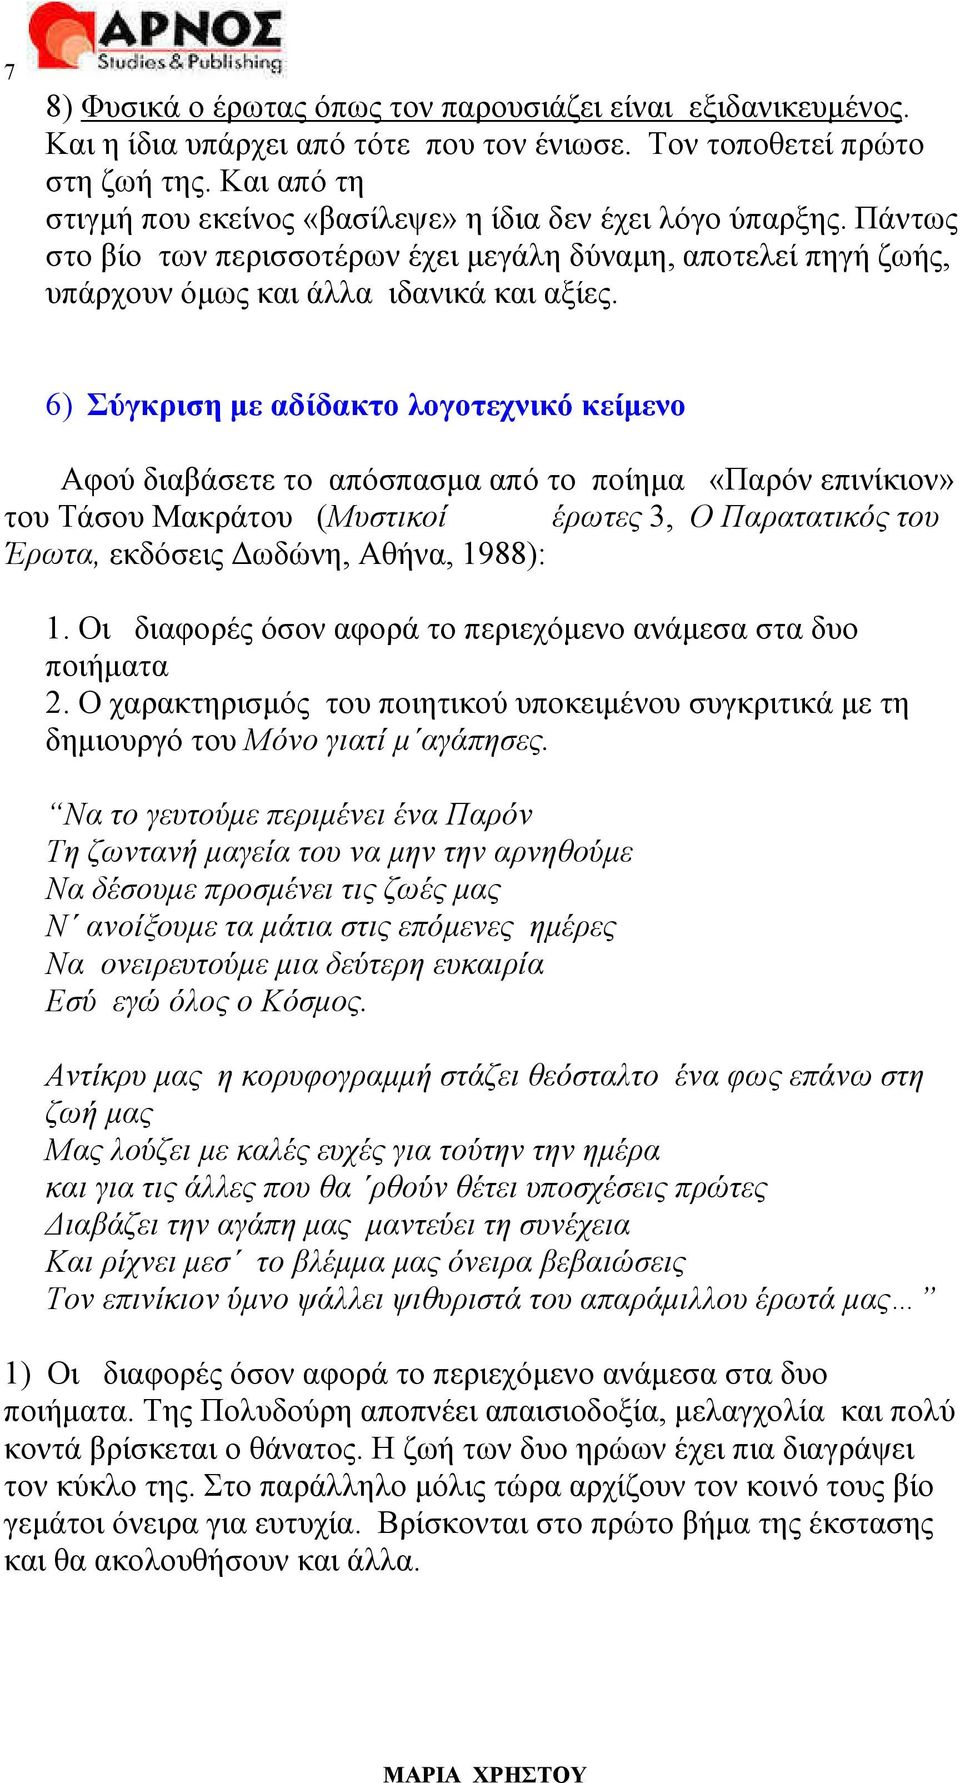 6) Σύγκριση µε αδίδακτο λογοτεχνικό κείµενο Αφού διαβάσετε το απόσπασµα από το ποίηµα «Παρόν επινίκιον» του Τάσου Μακράτου (Μυστικοί έρωτες 3, Ο Παρατατικός του Έρωτα, εκδόσεις ωδώνη, Αθήνα, 1988): 1.